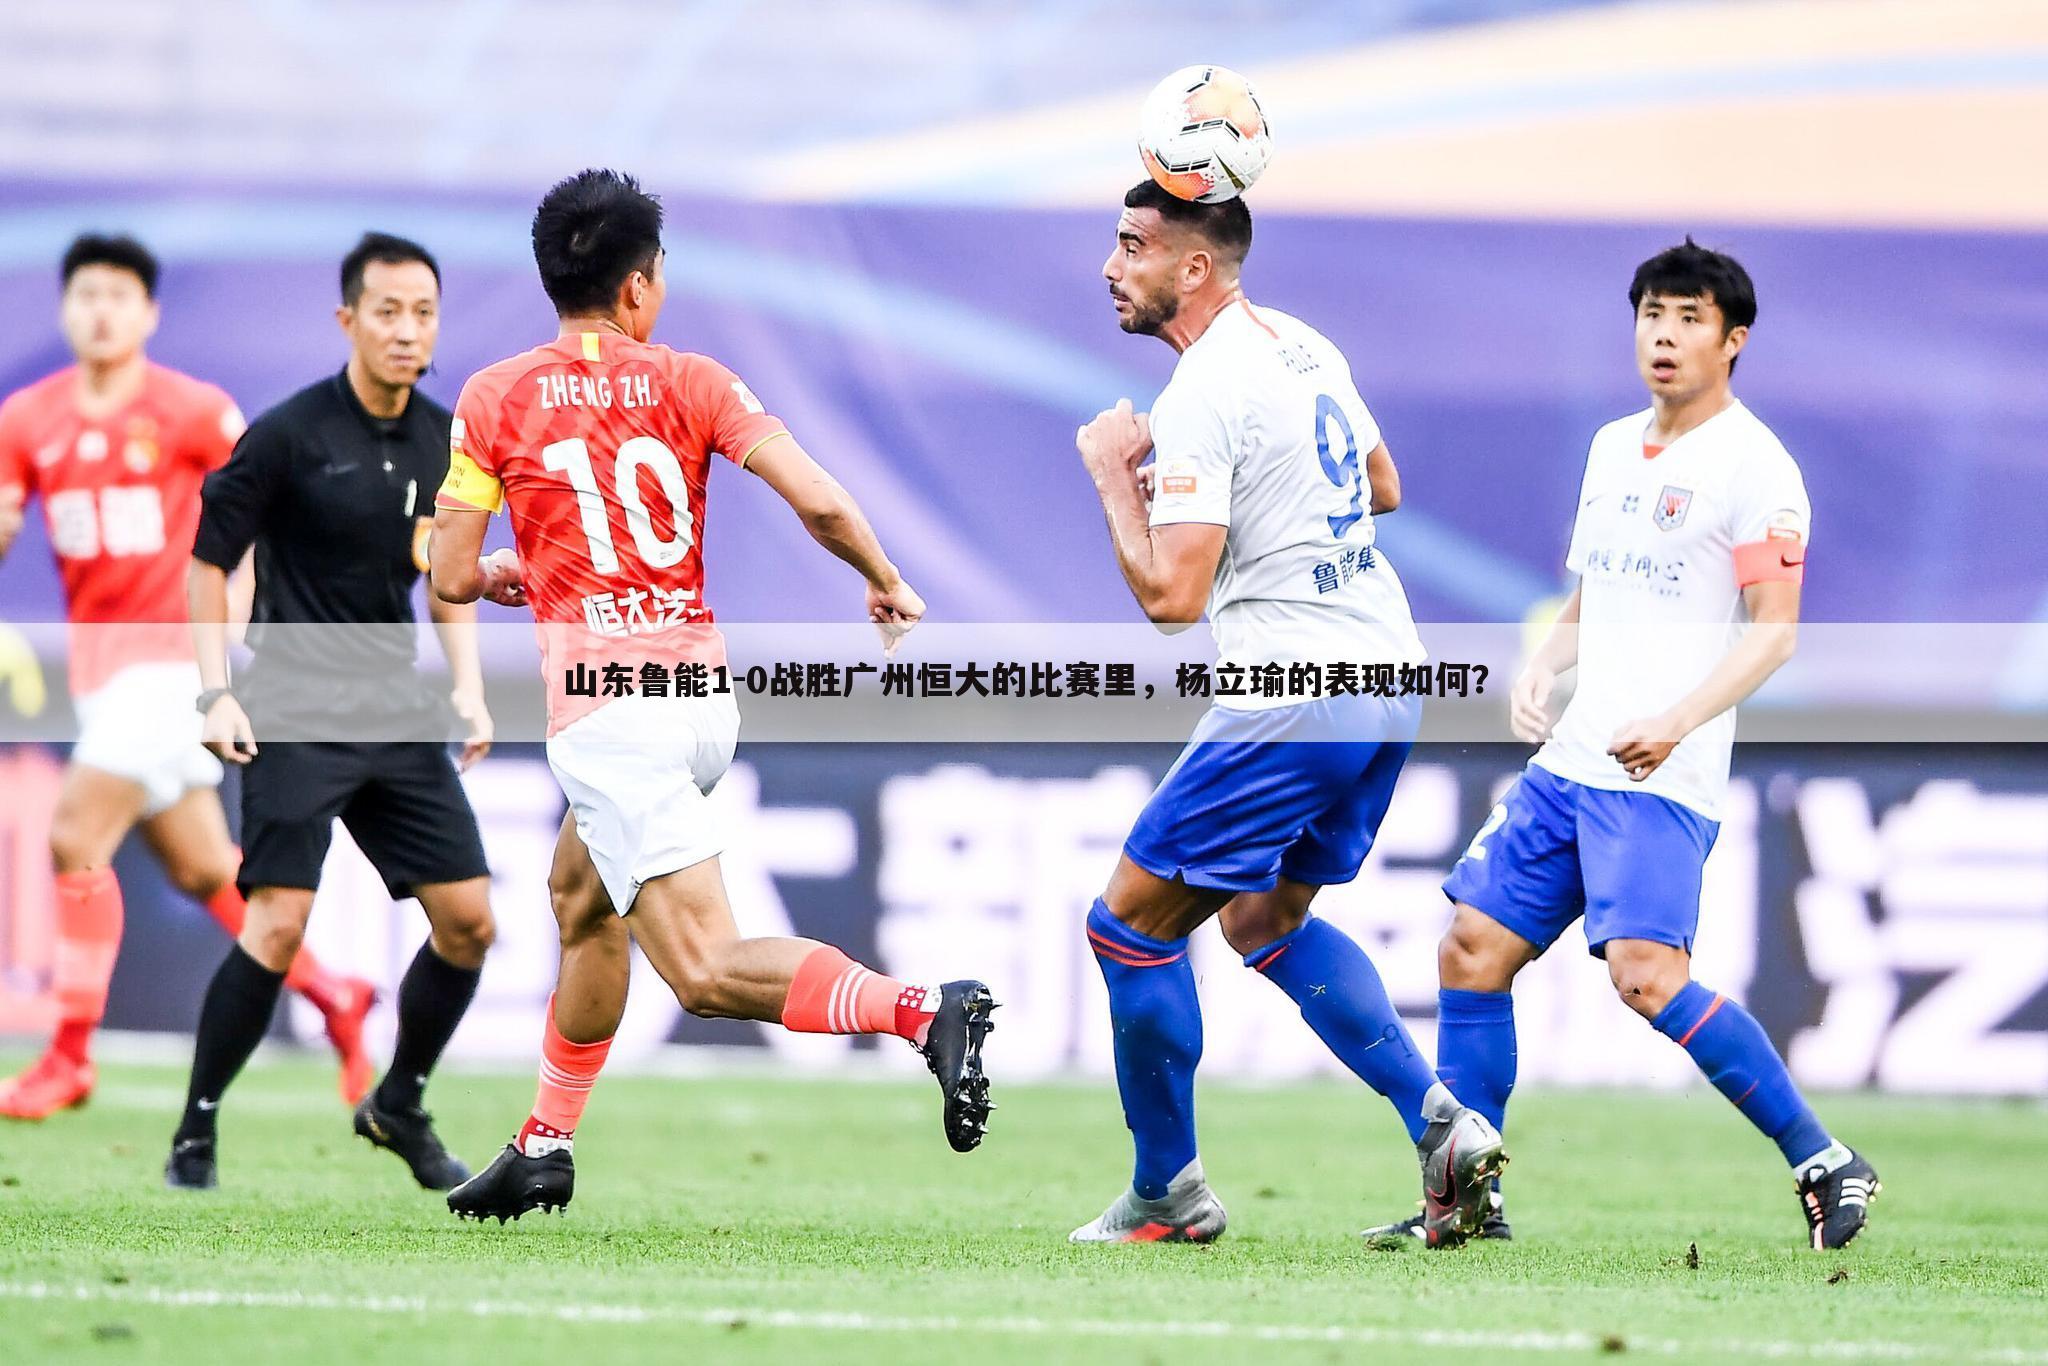 山东鲁能1-0战胜广州恒大的比赛里，杨立瑜的表现如何？